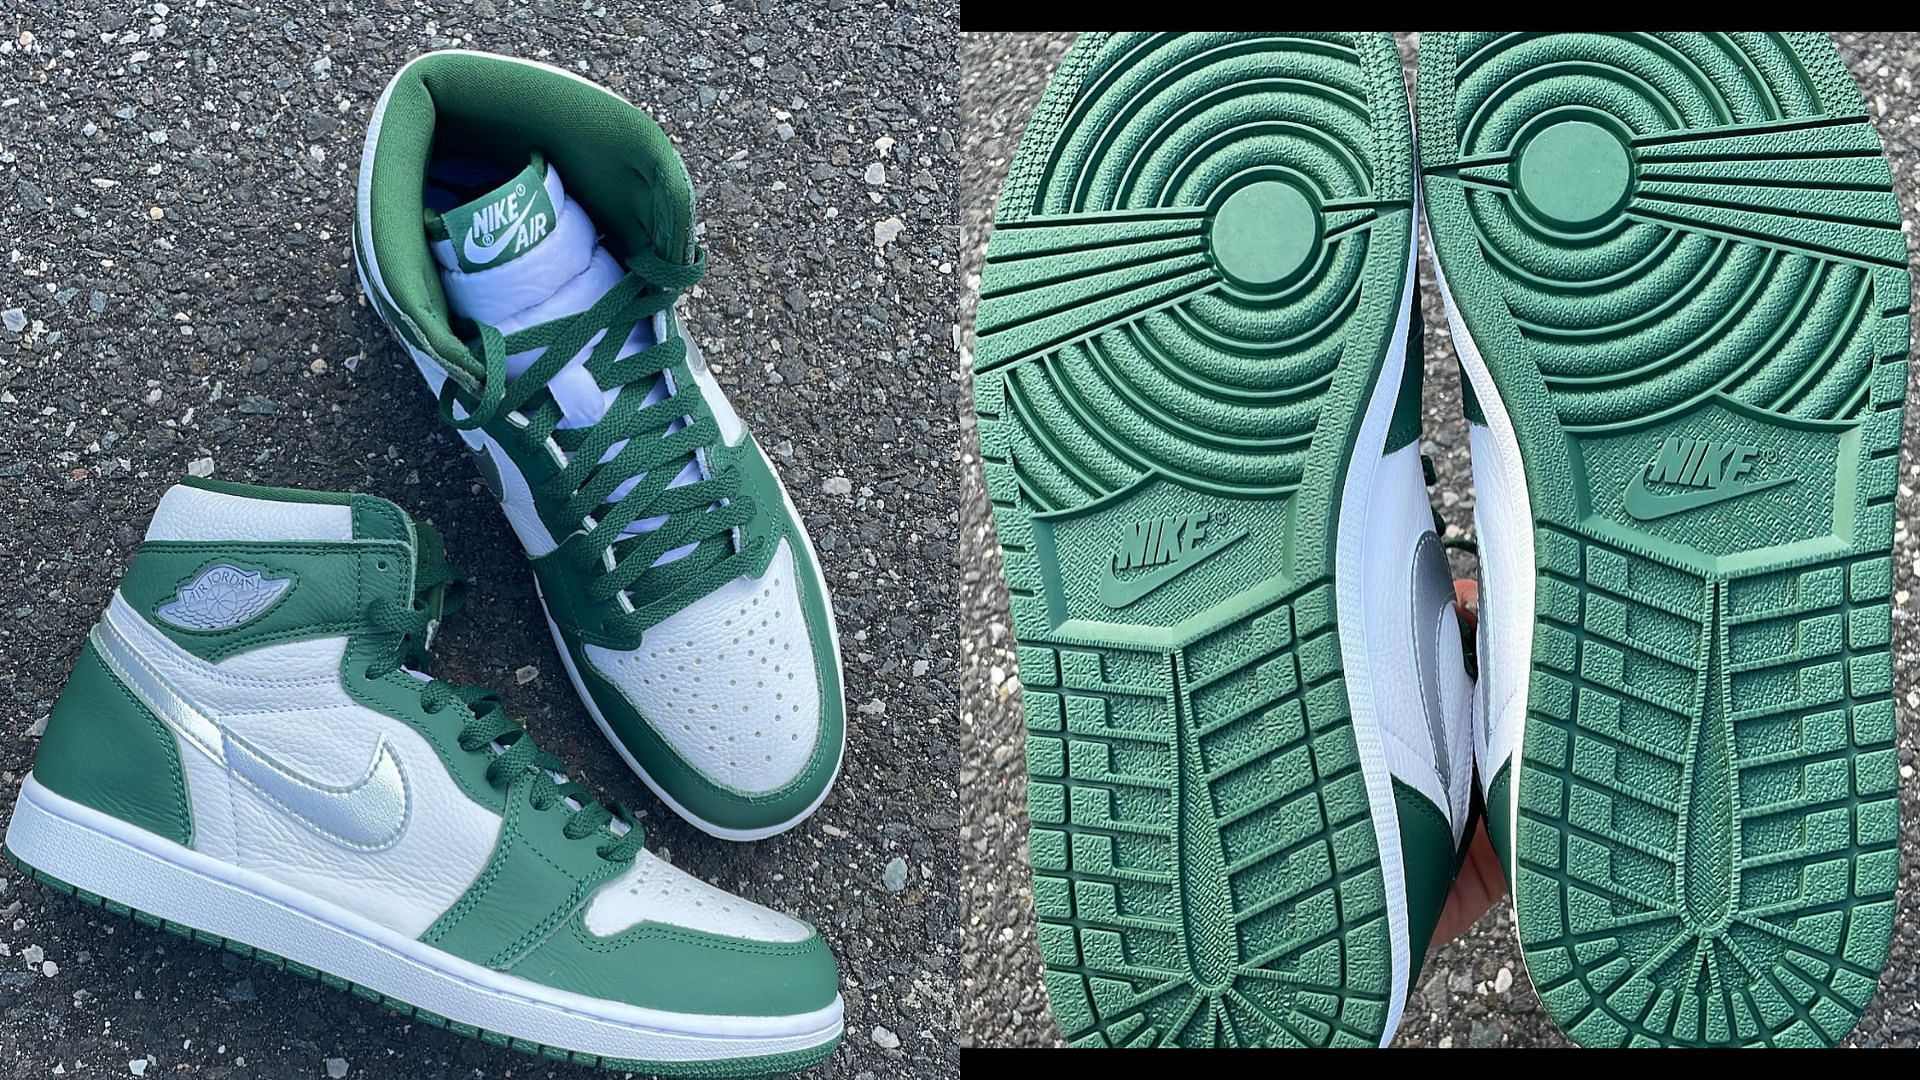 Upcoming Nike Air Jordan 1 High OG Gorge Green sneakers (Image via @chickenwop / Instagram)